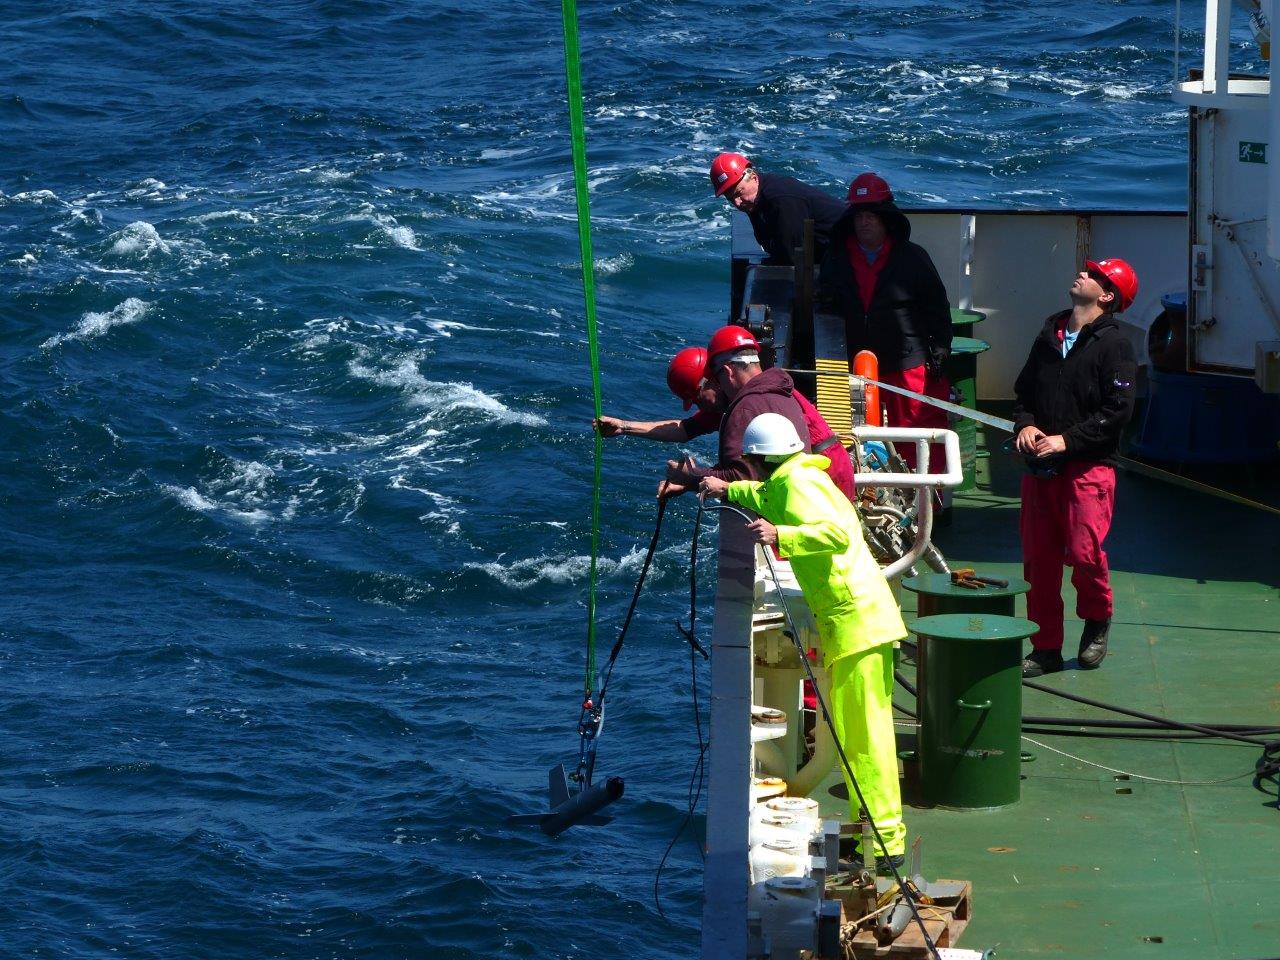 homens-com-capacete-a-bordo-de-um-navio-colocam-aparelho-na-agua-do-mar-com-ajuda-de-um-cabo